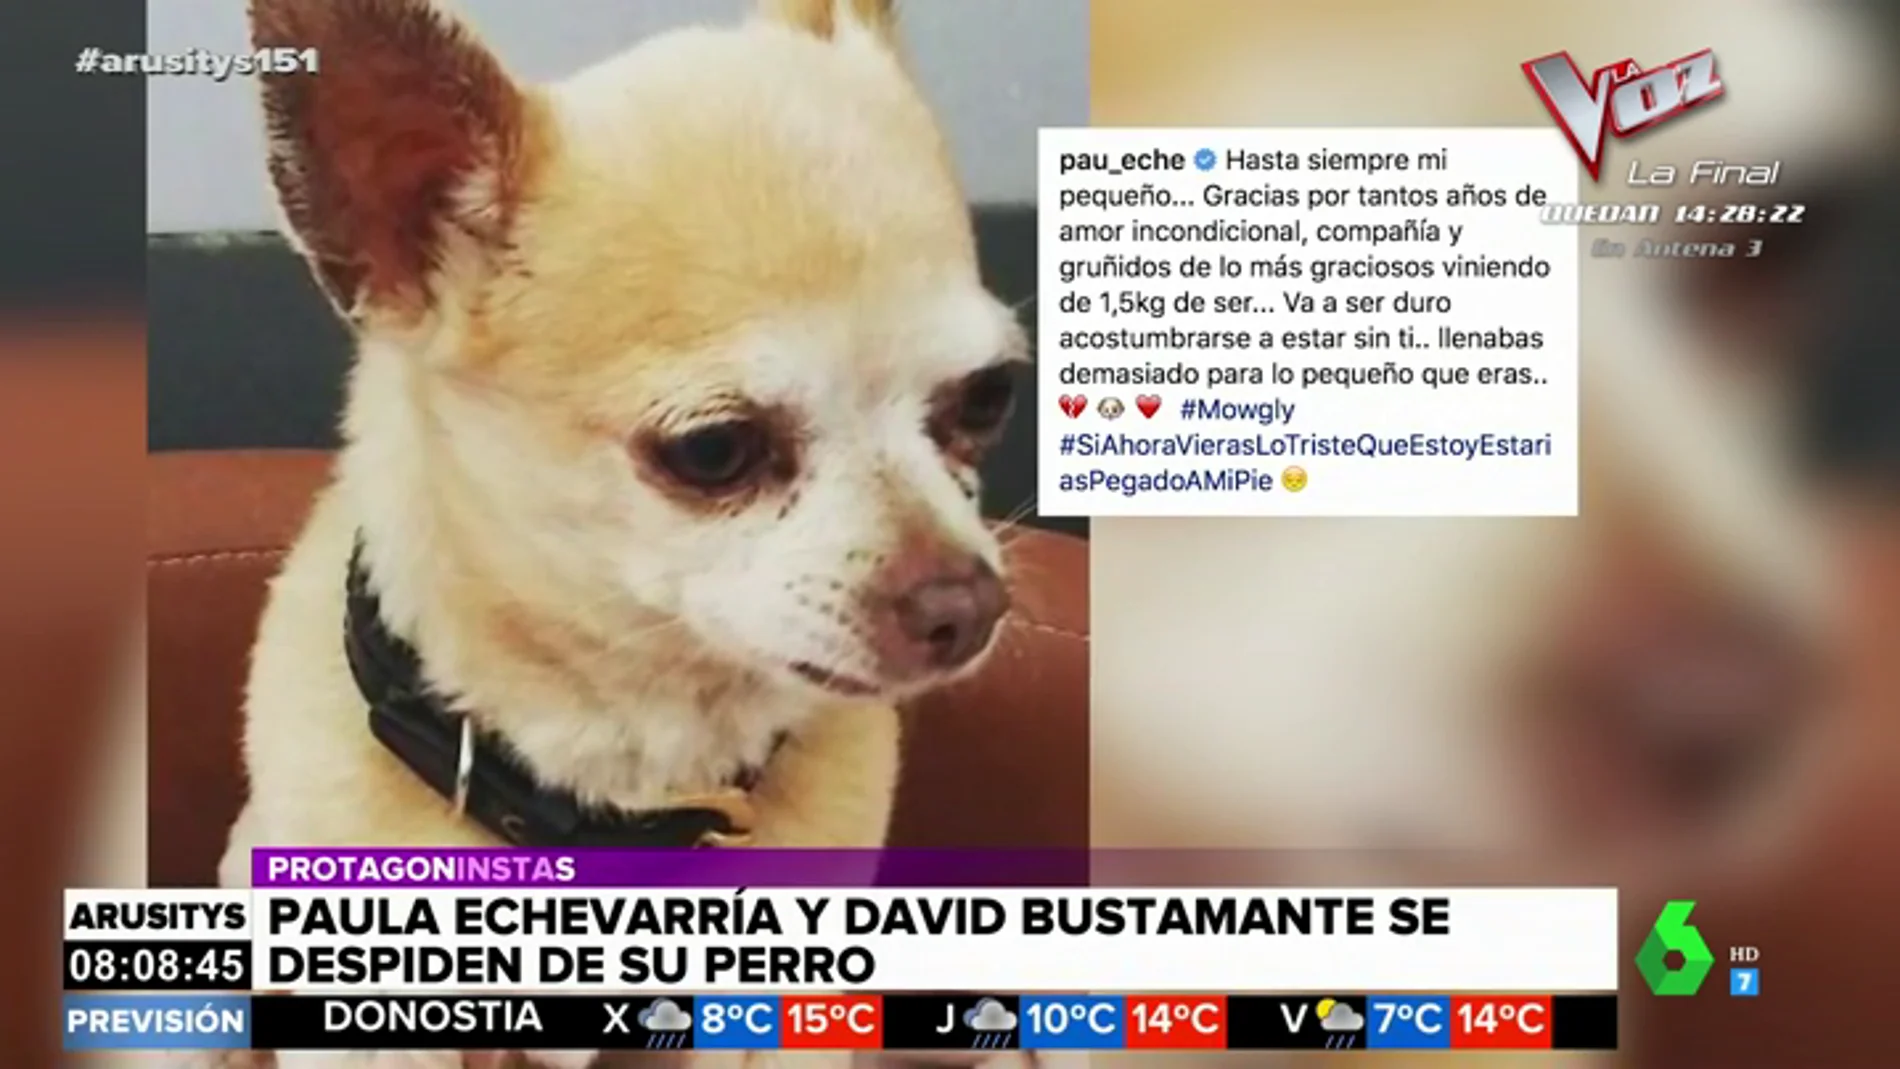 La emotiva despedida de Paula Echevarría y David Bustamante a su chihuahua Mogwli